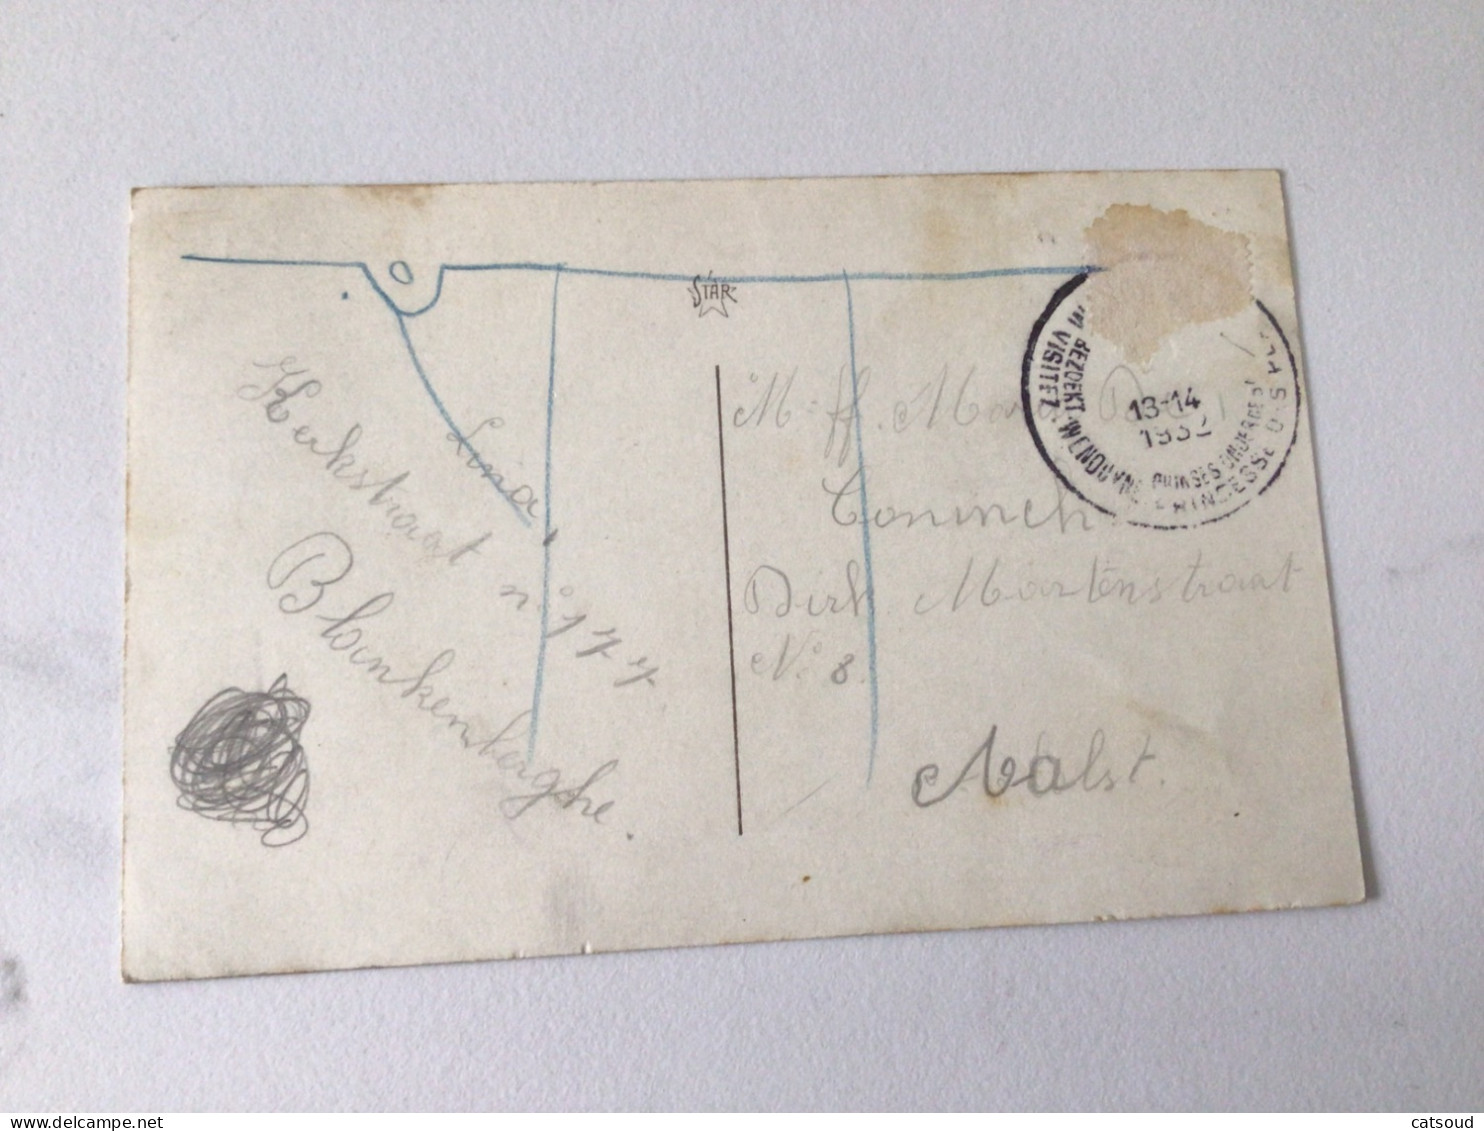 Carte Postale Ancienne (1932) Wenduyne Les Enfants Au Jeu - Les Trois Graces ! - Wenduine